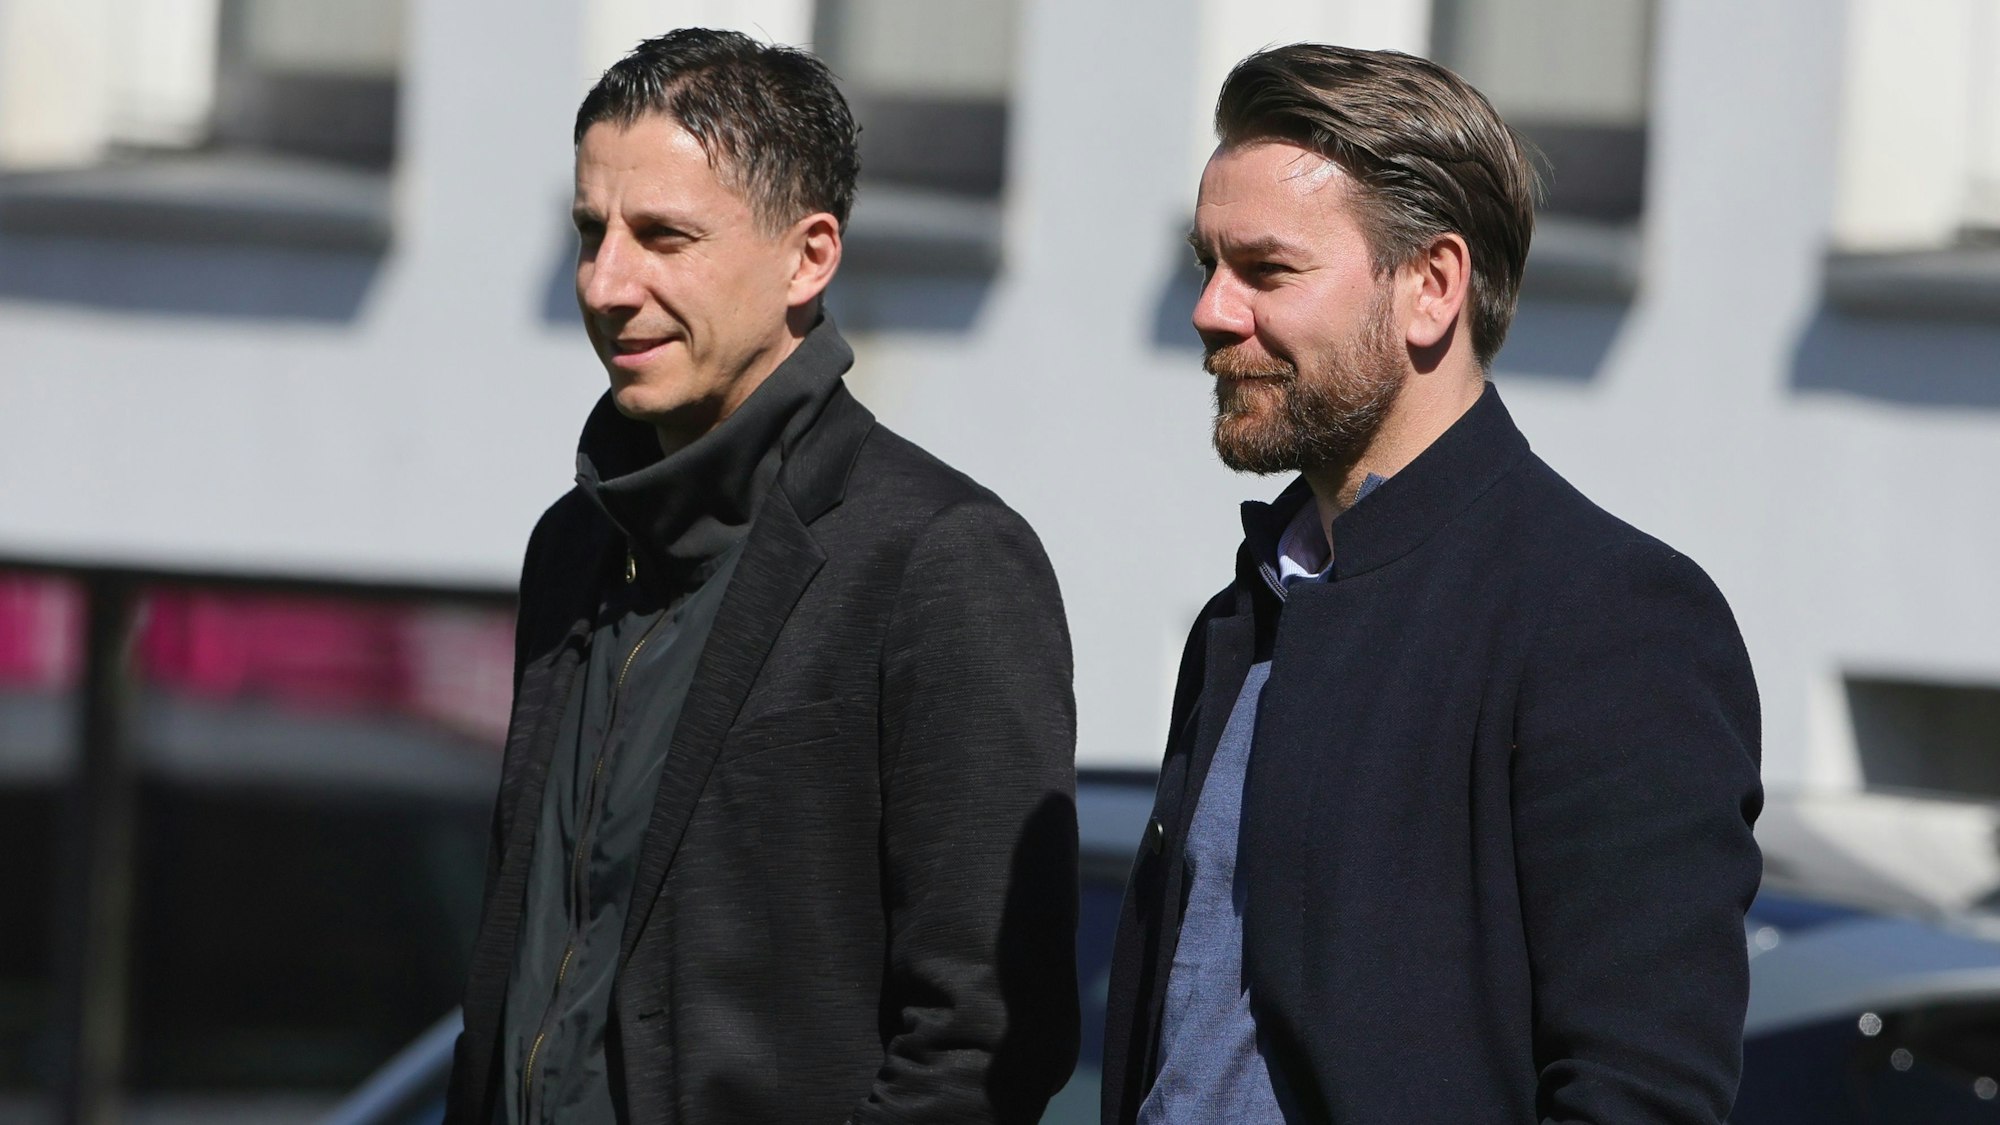 Geschäftsführer Christian Keller und Lizenzbereich-Leiter Thomas Kessler beobachten das Training des 1. FC Köln.